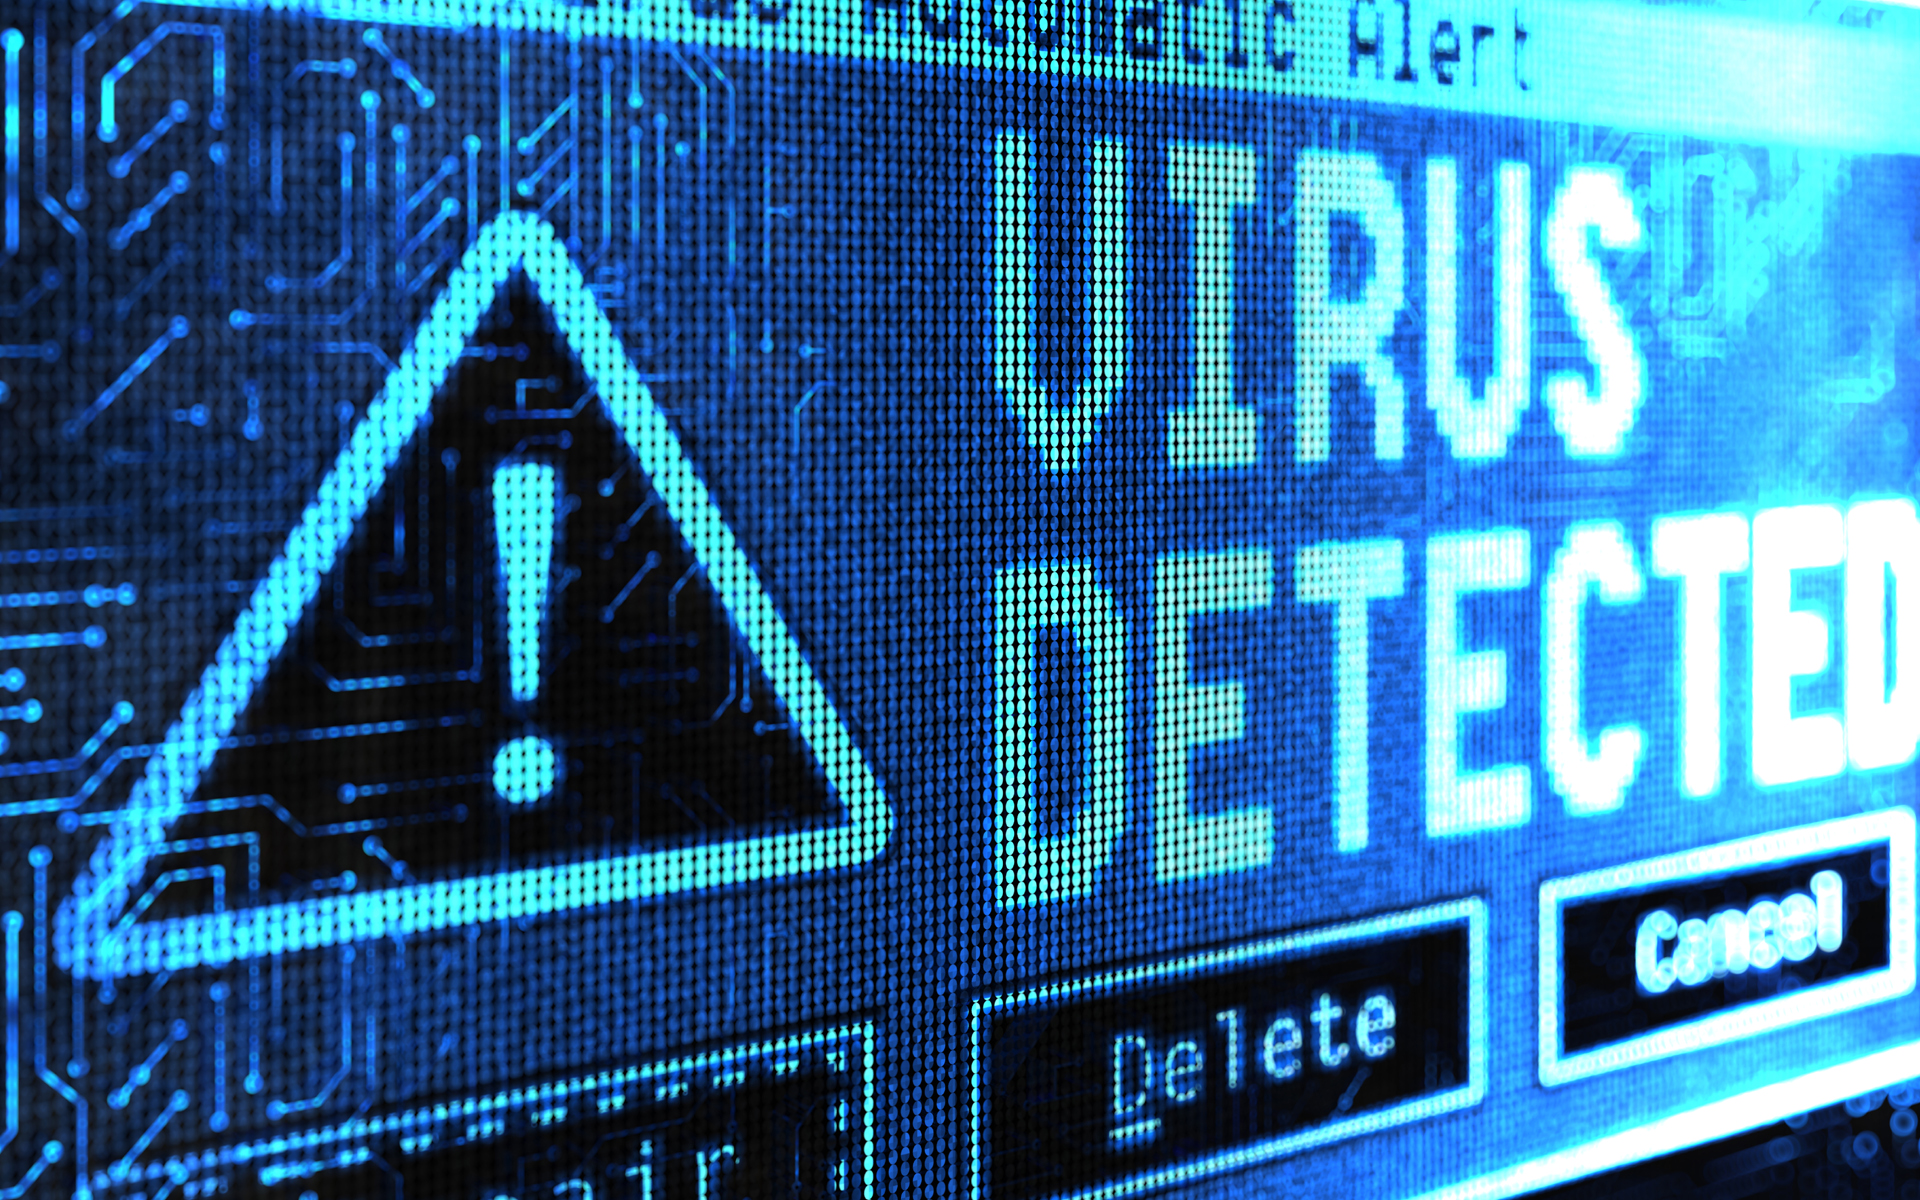 Malware Nedir, Ne Demek ve Ne Anlama Gelir? Malware Saldırısı Nasıl Yapılır ve Nasıl Önlenir?